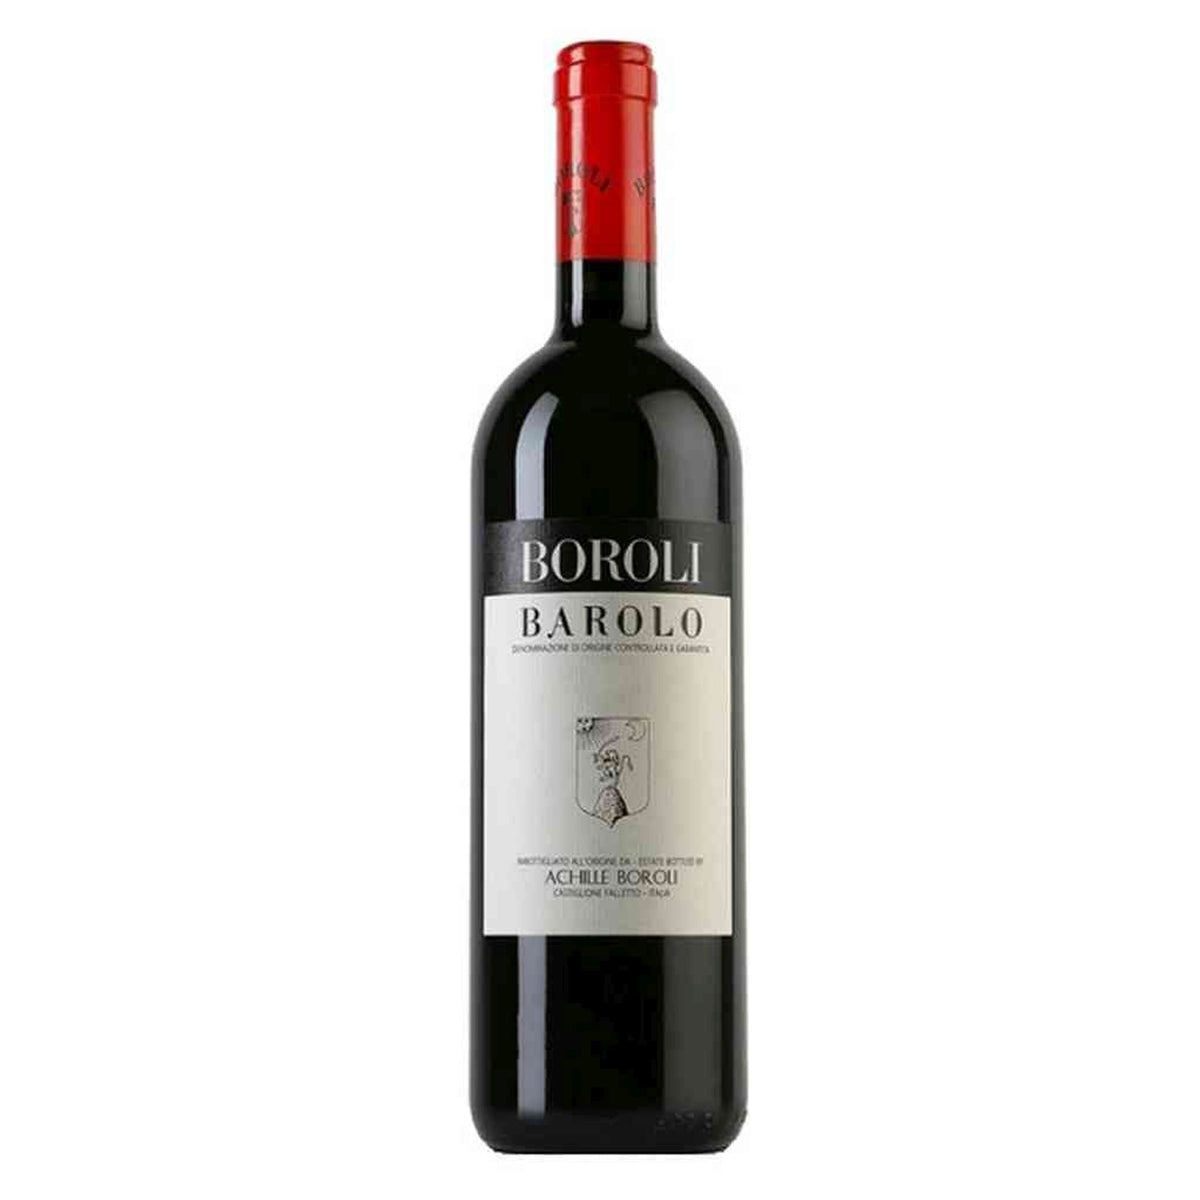 Boroli-Rotwein-Nebbiolo-2012 Barolo Classico-WINECOM